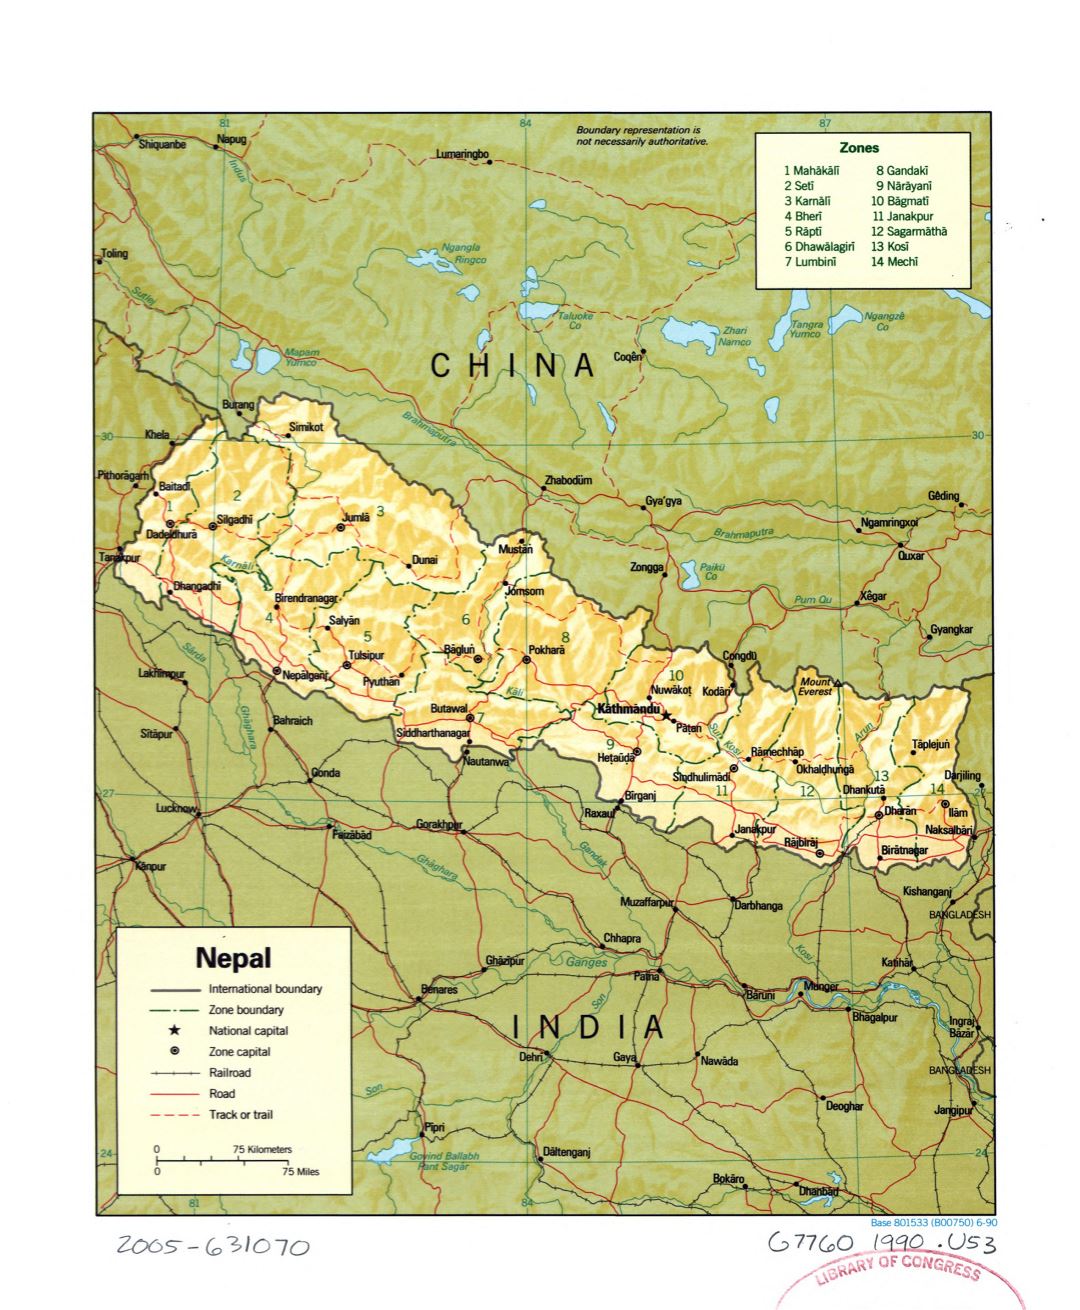 Grande detallado mapa político y administrativo de Nepal con socorro, carreteras, ferrocarriles y principales ciudades - 1990